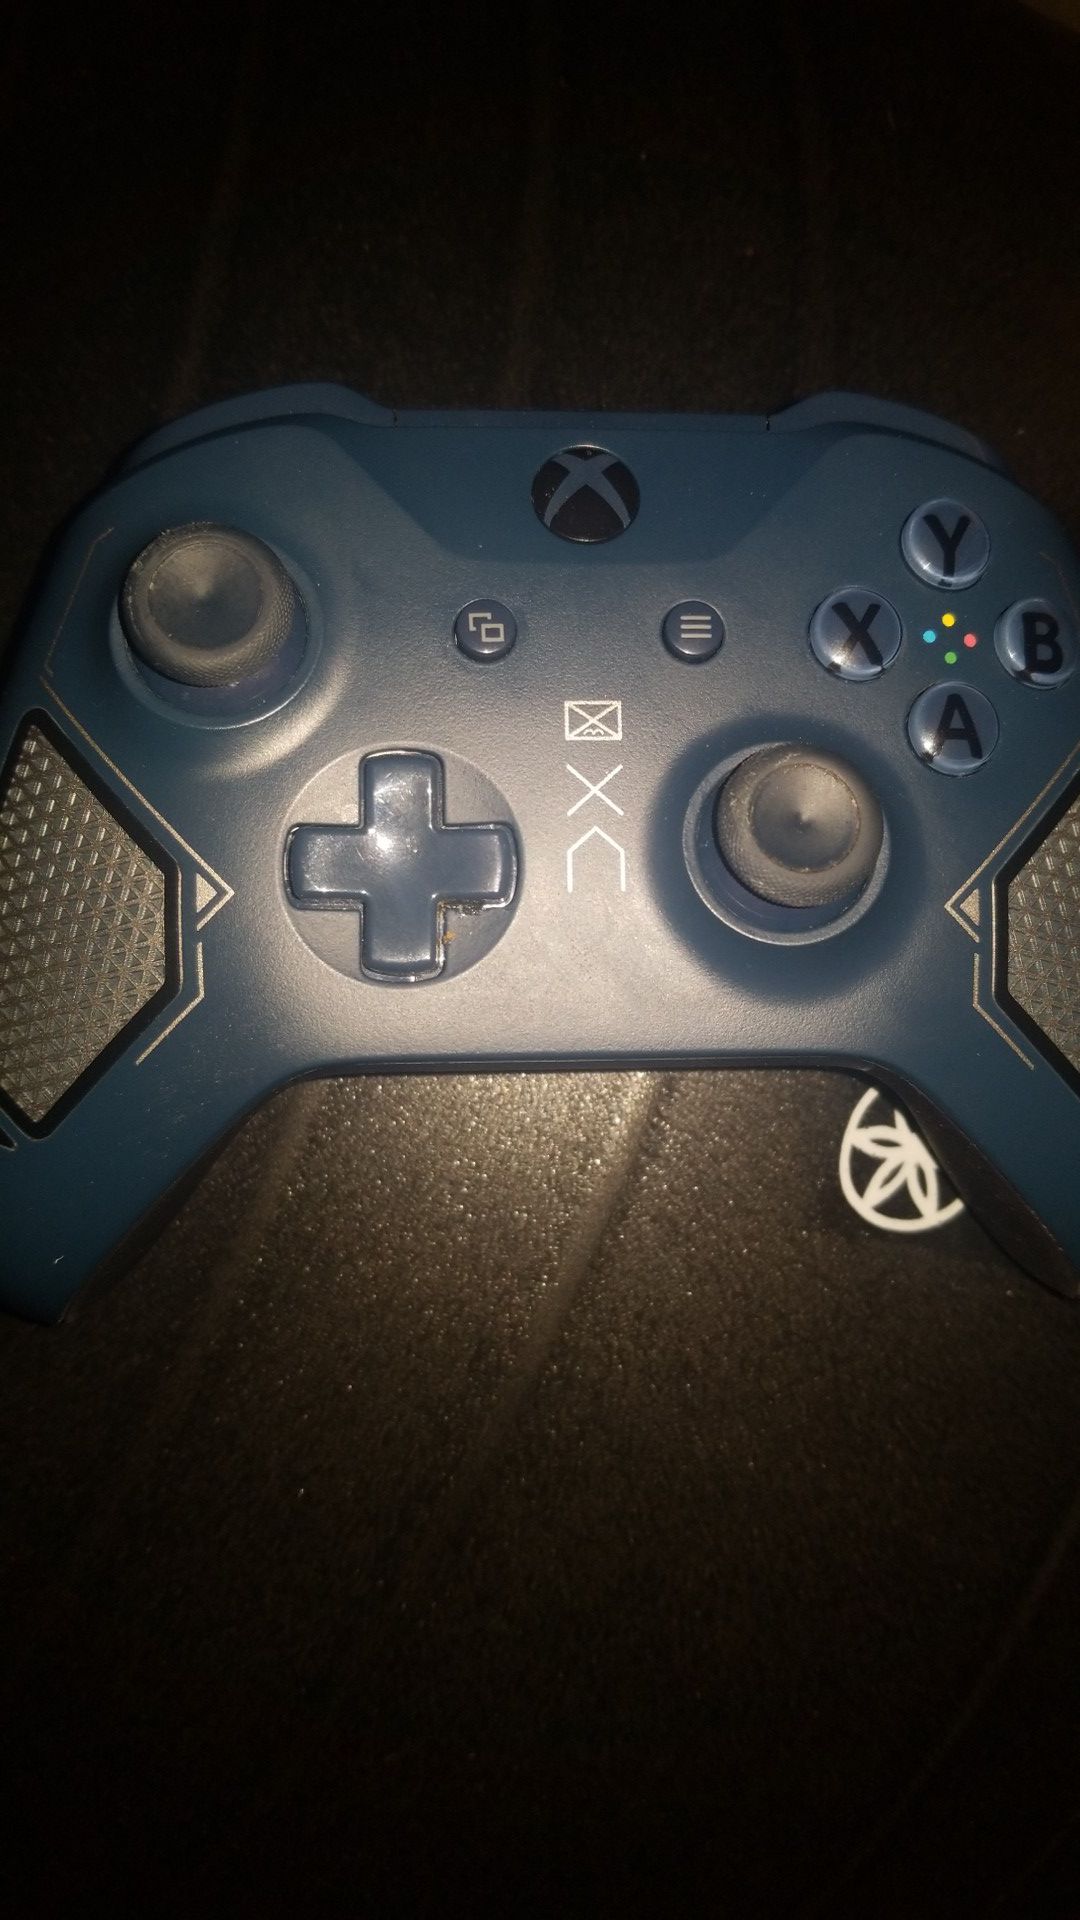 Xbox special edition controller